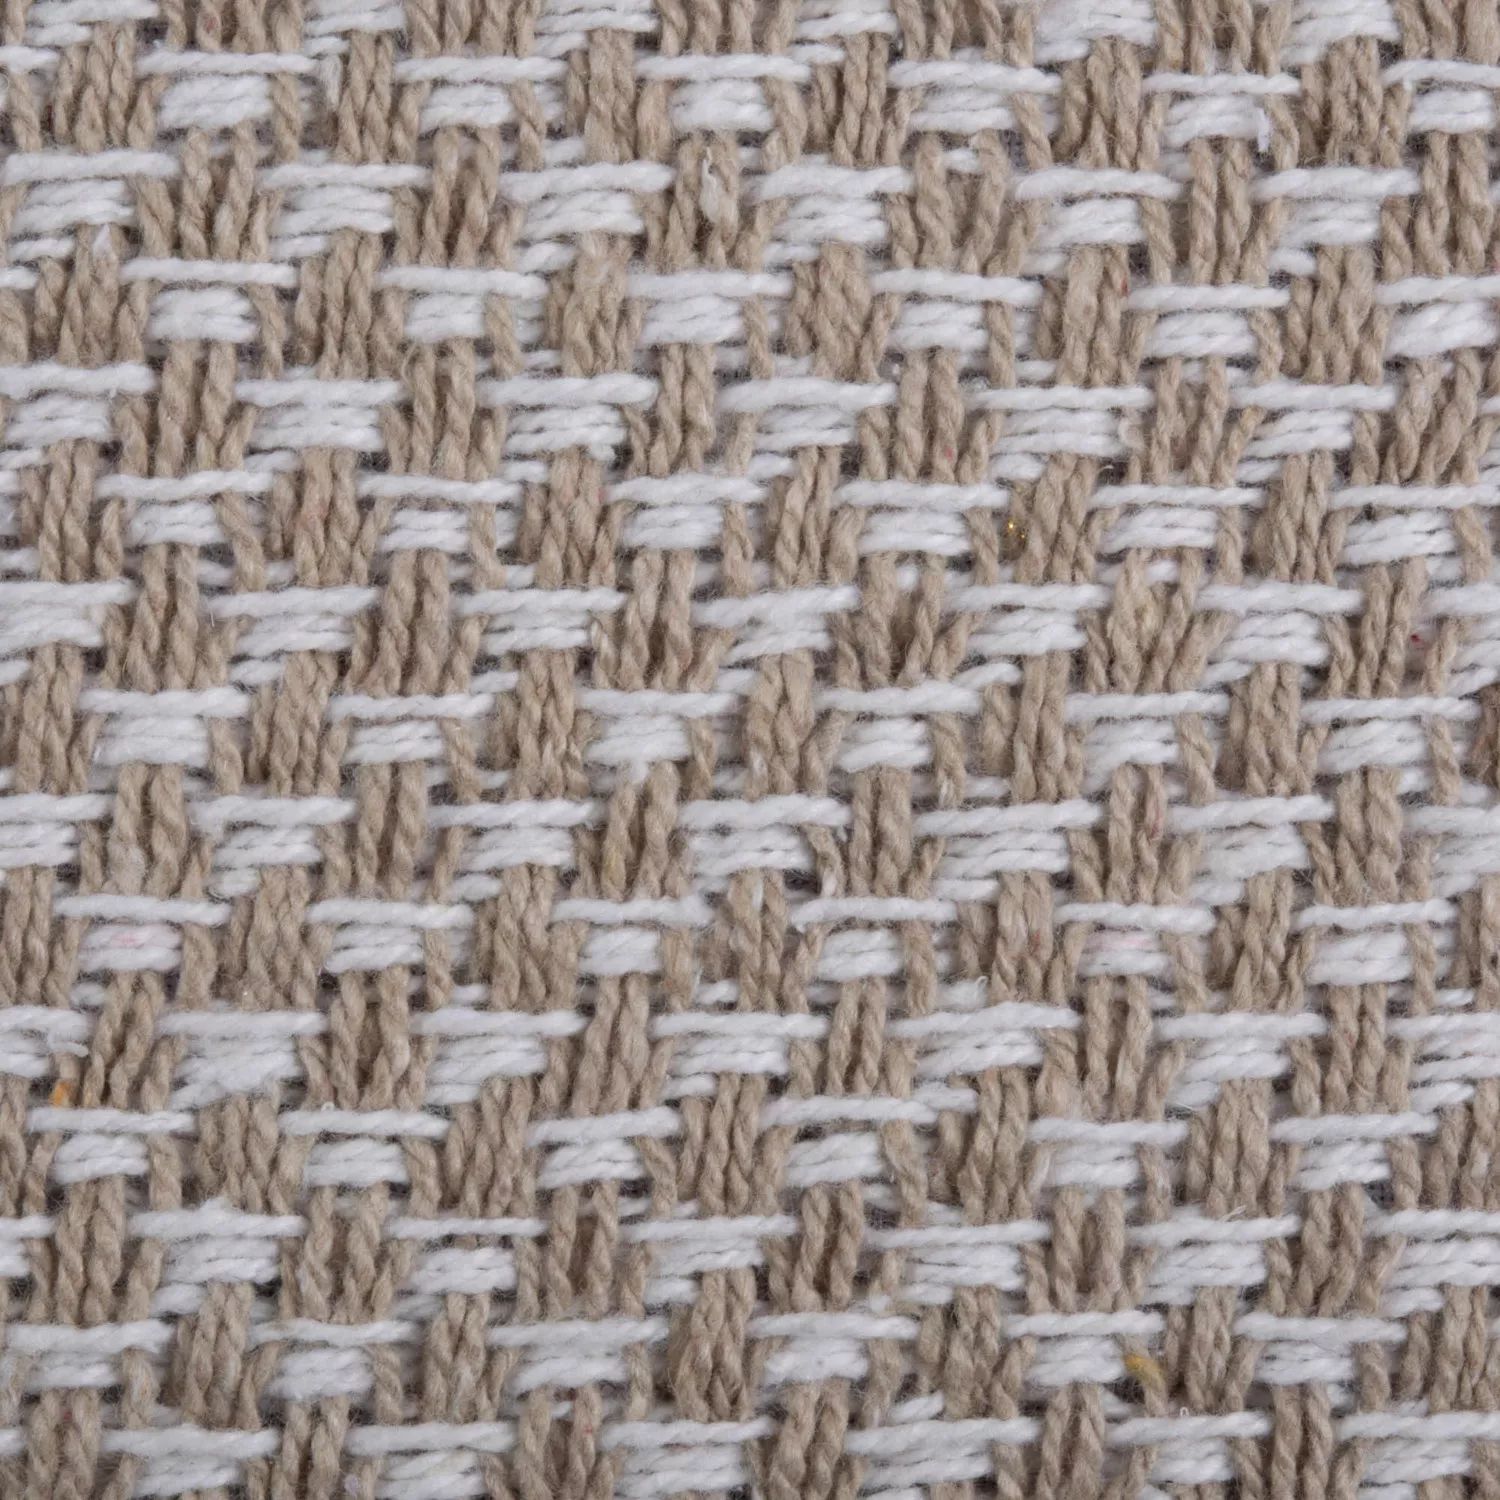 72-дюймовая прямоугольная плетеная скатерть бежево-белого цвета 104 дюймовая прямоугольная скатерть в клетку кремово белого и коричневого цвета с металлическим оттенком